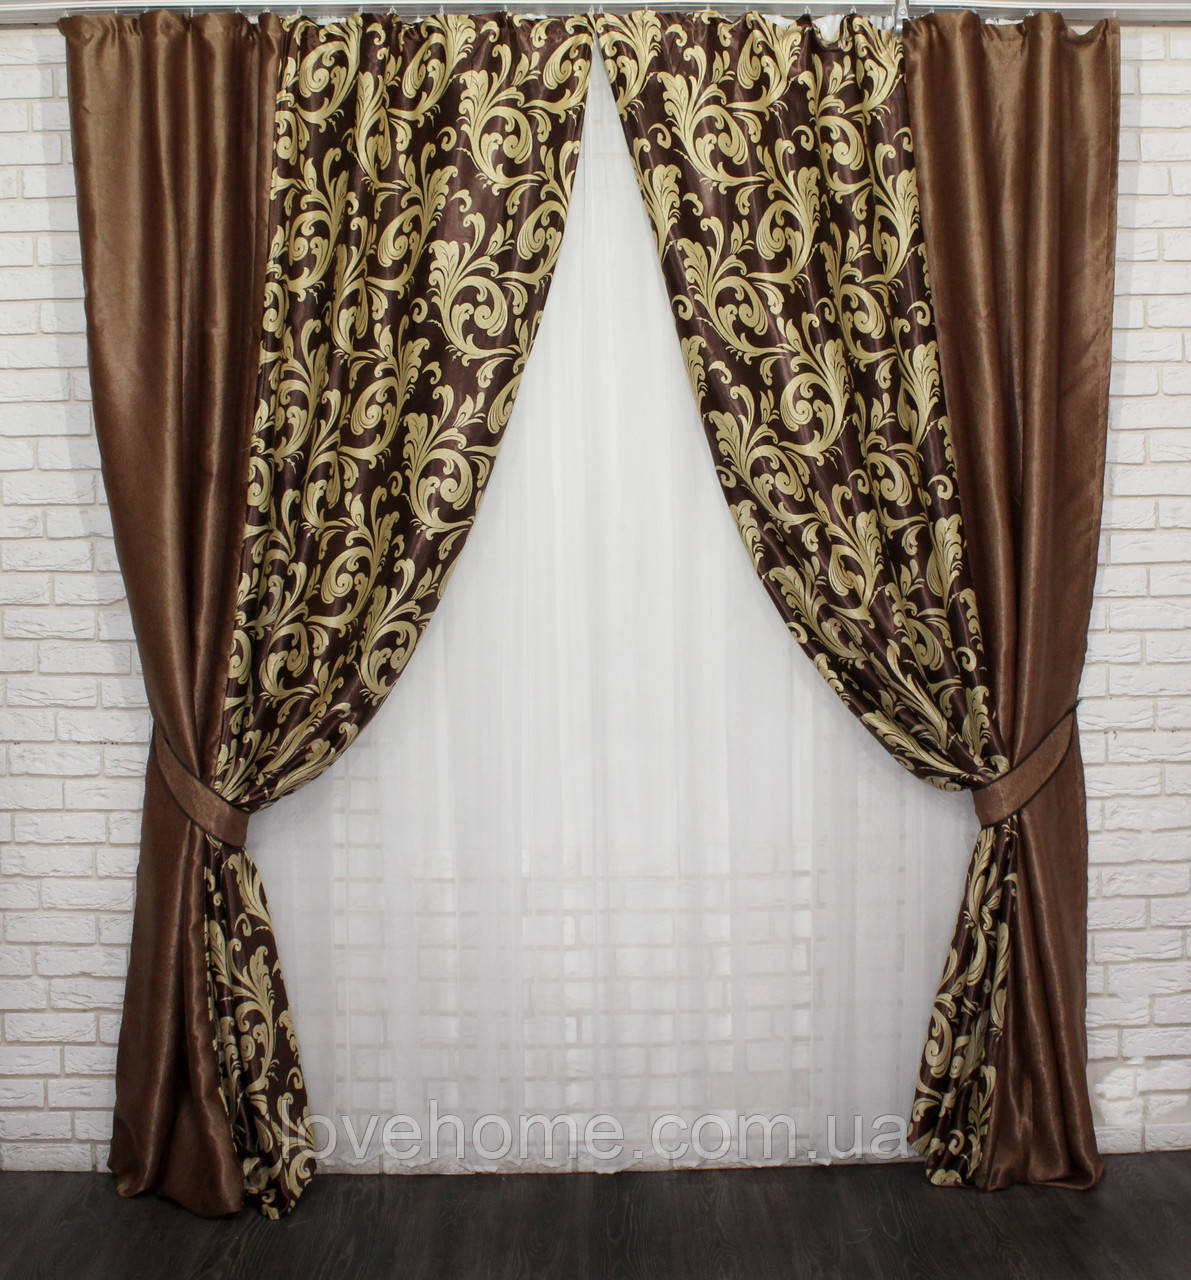 Плотные комбинированные шторы из ткани блэкаут софт. Цвет коричневый с бежевым. Шторы для спальни, зала